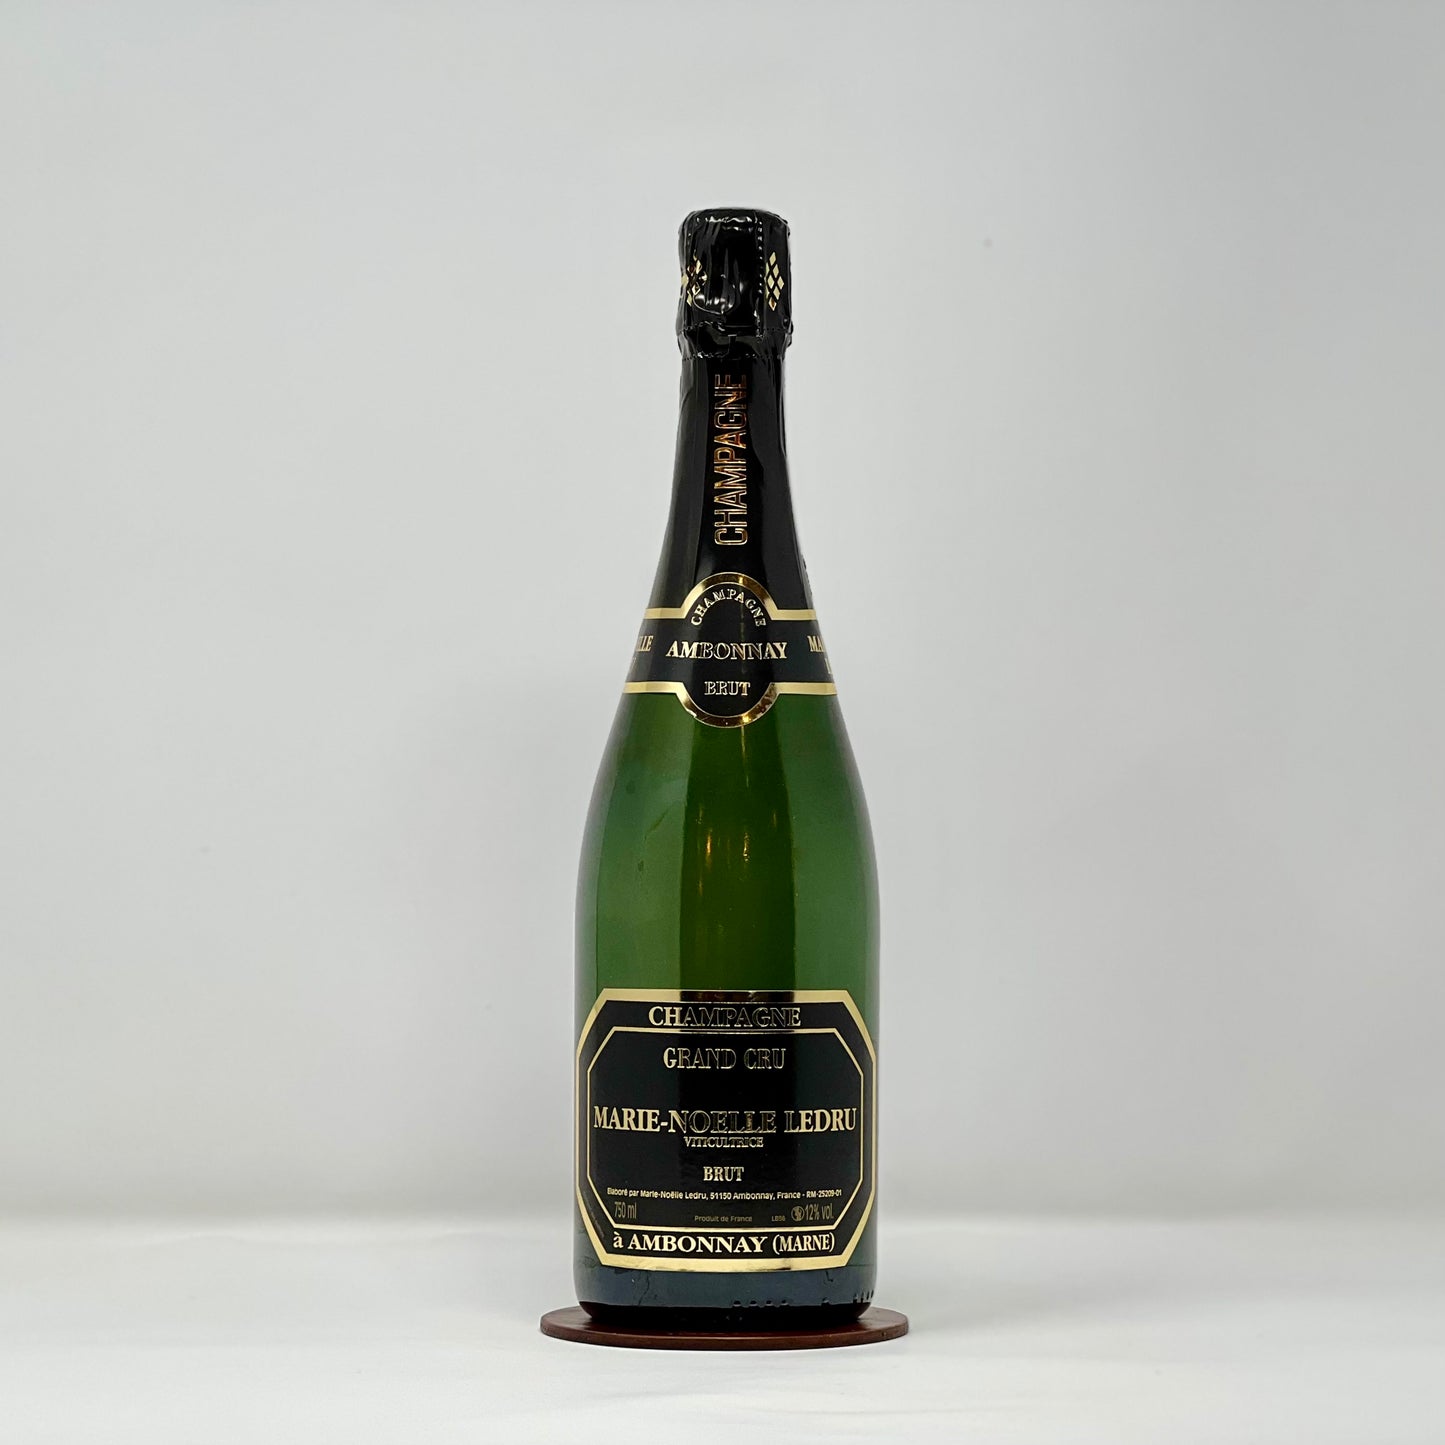 MARIE-NÖELLE LEDRU - "Grand Cru" Champagne Brut